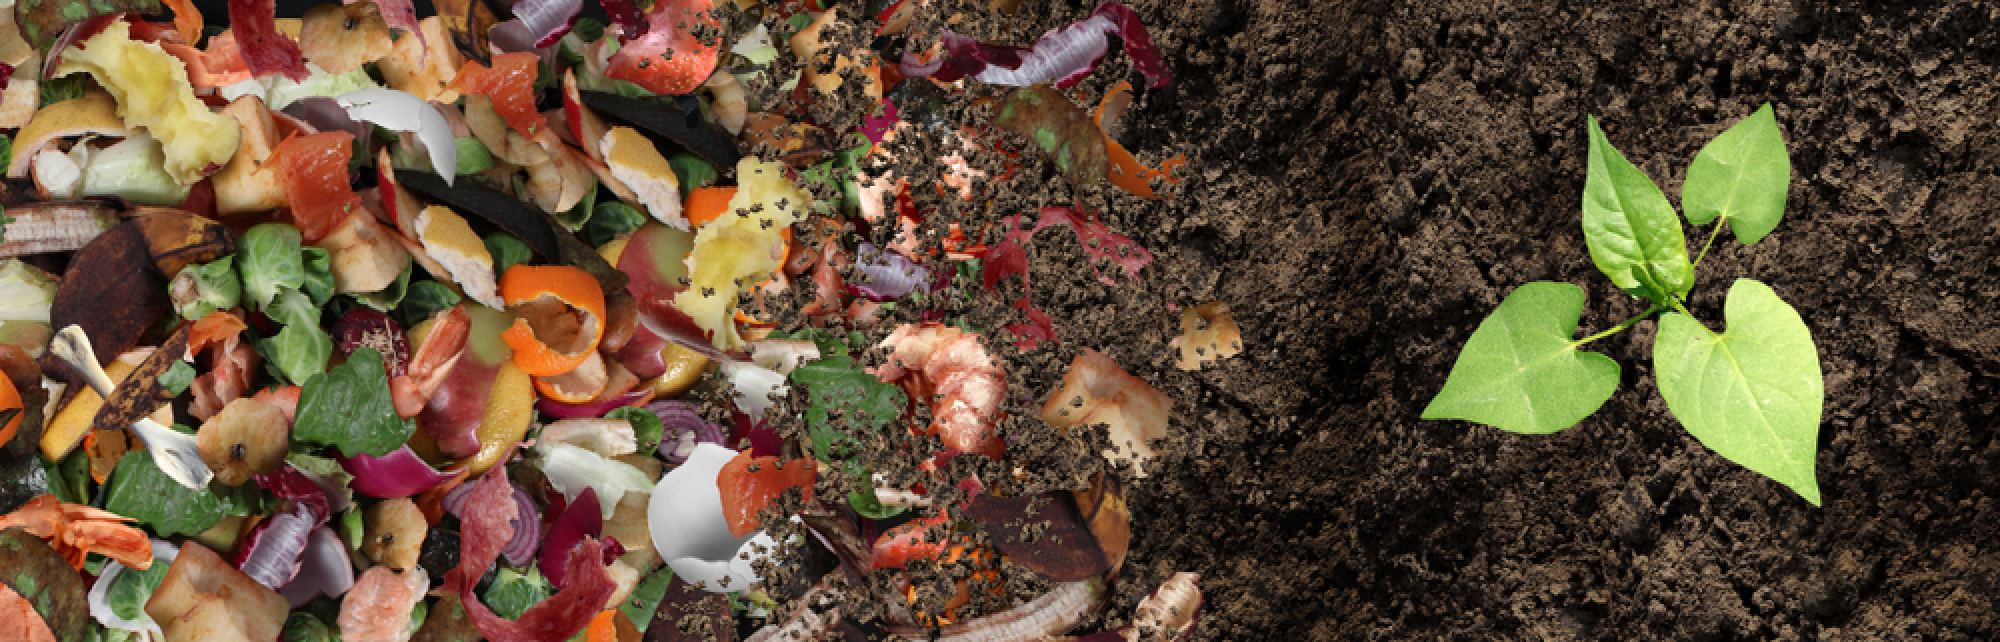 Des déchets de compost à côté d’une pile d’engrais sur laquelle pousse une plante